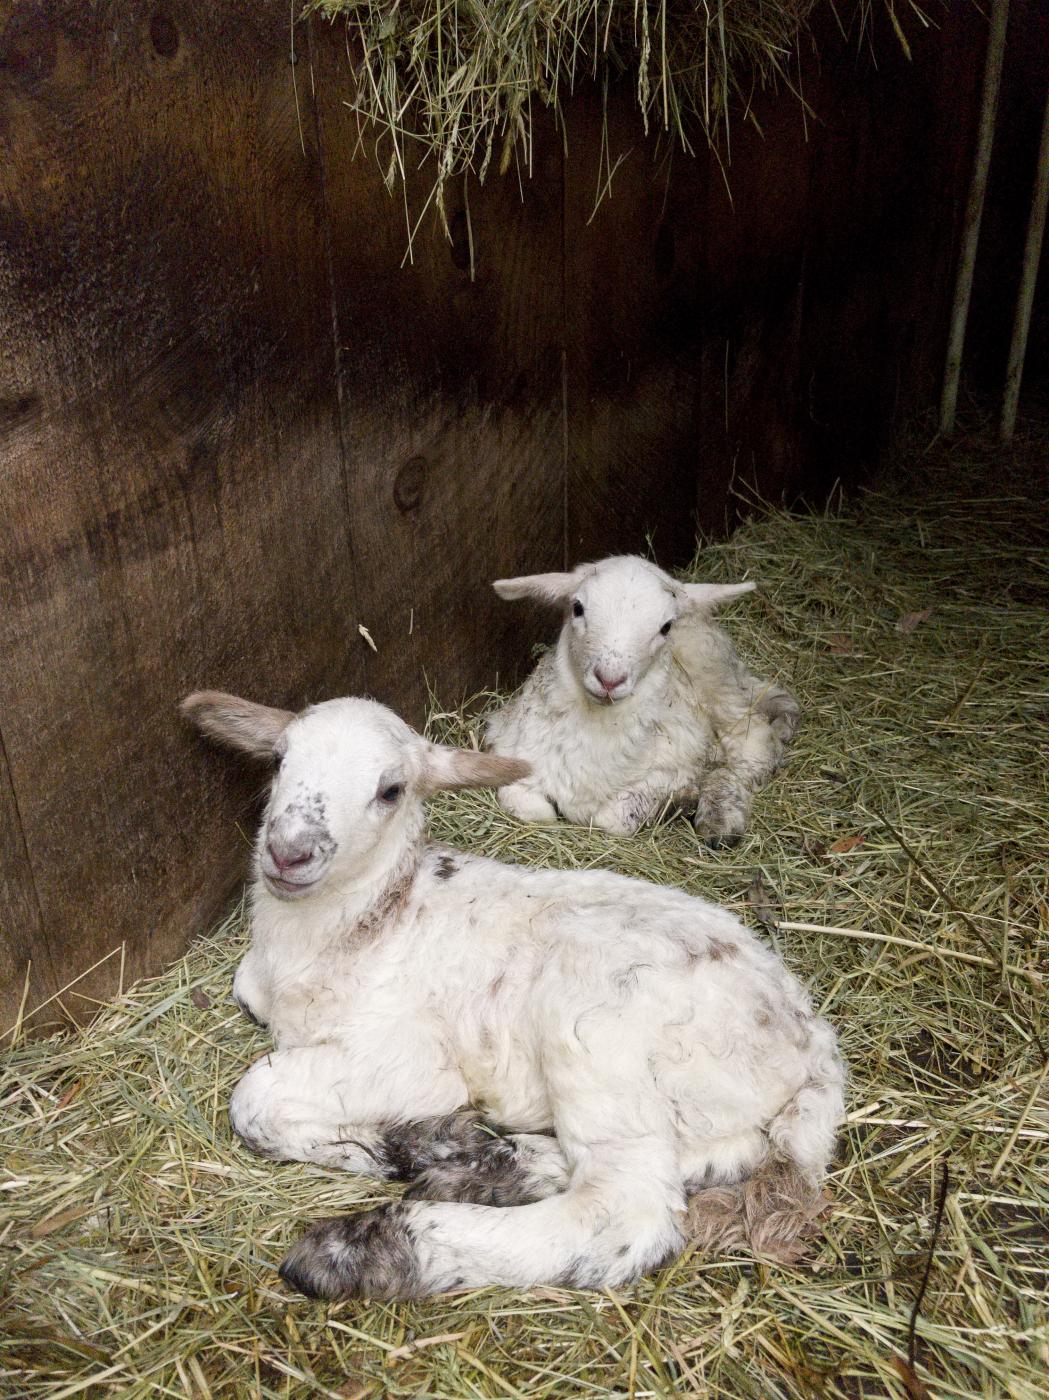 Newborn Lambs | Buy this image